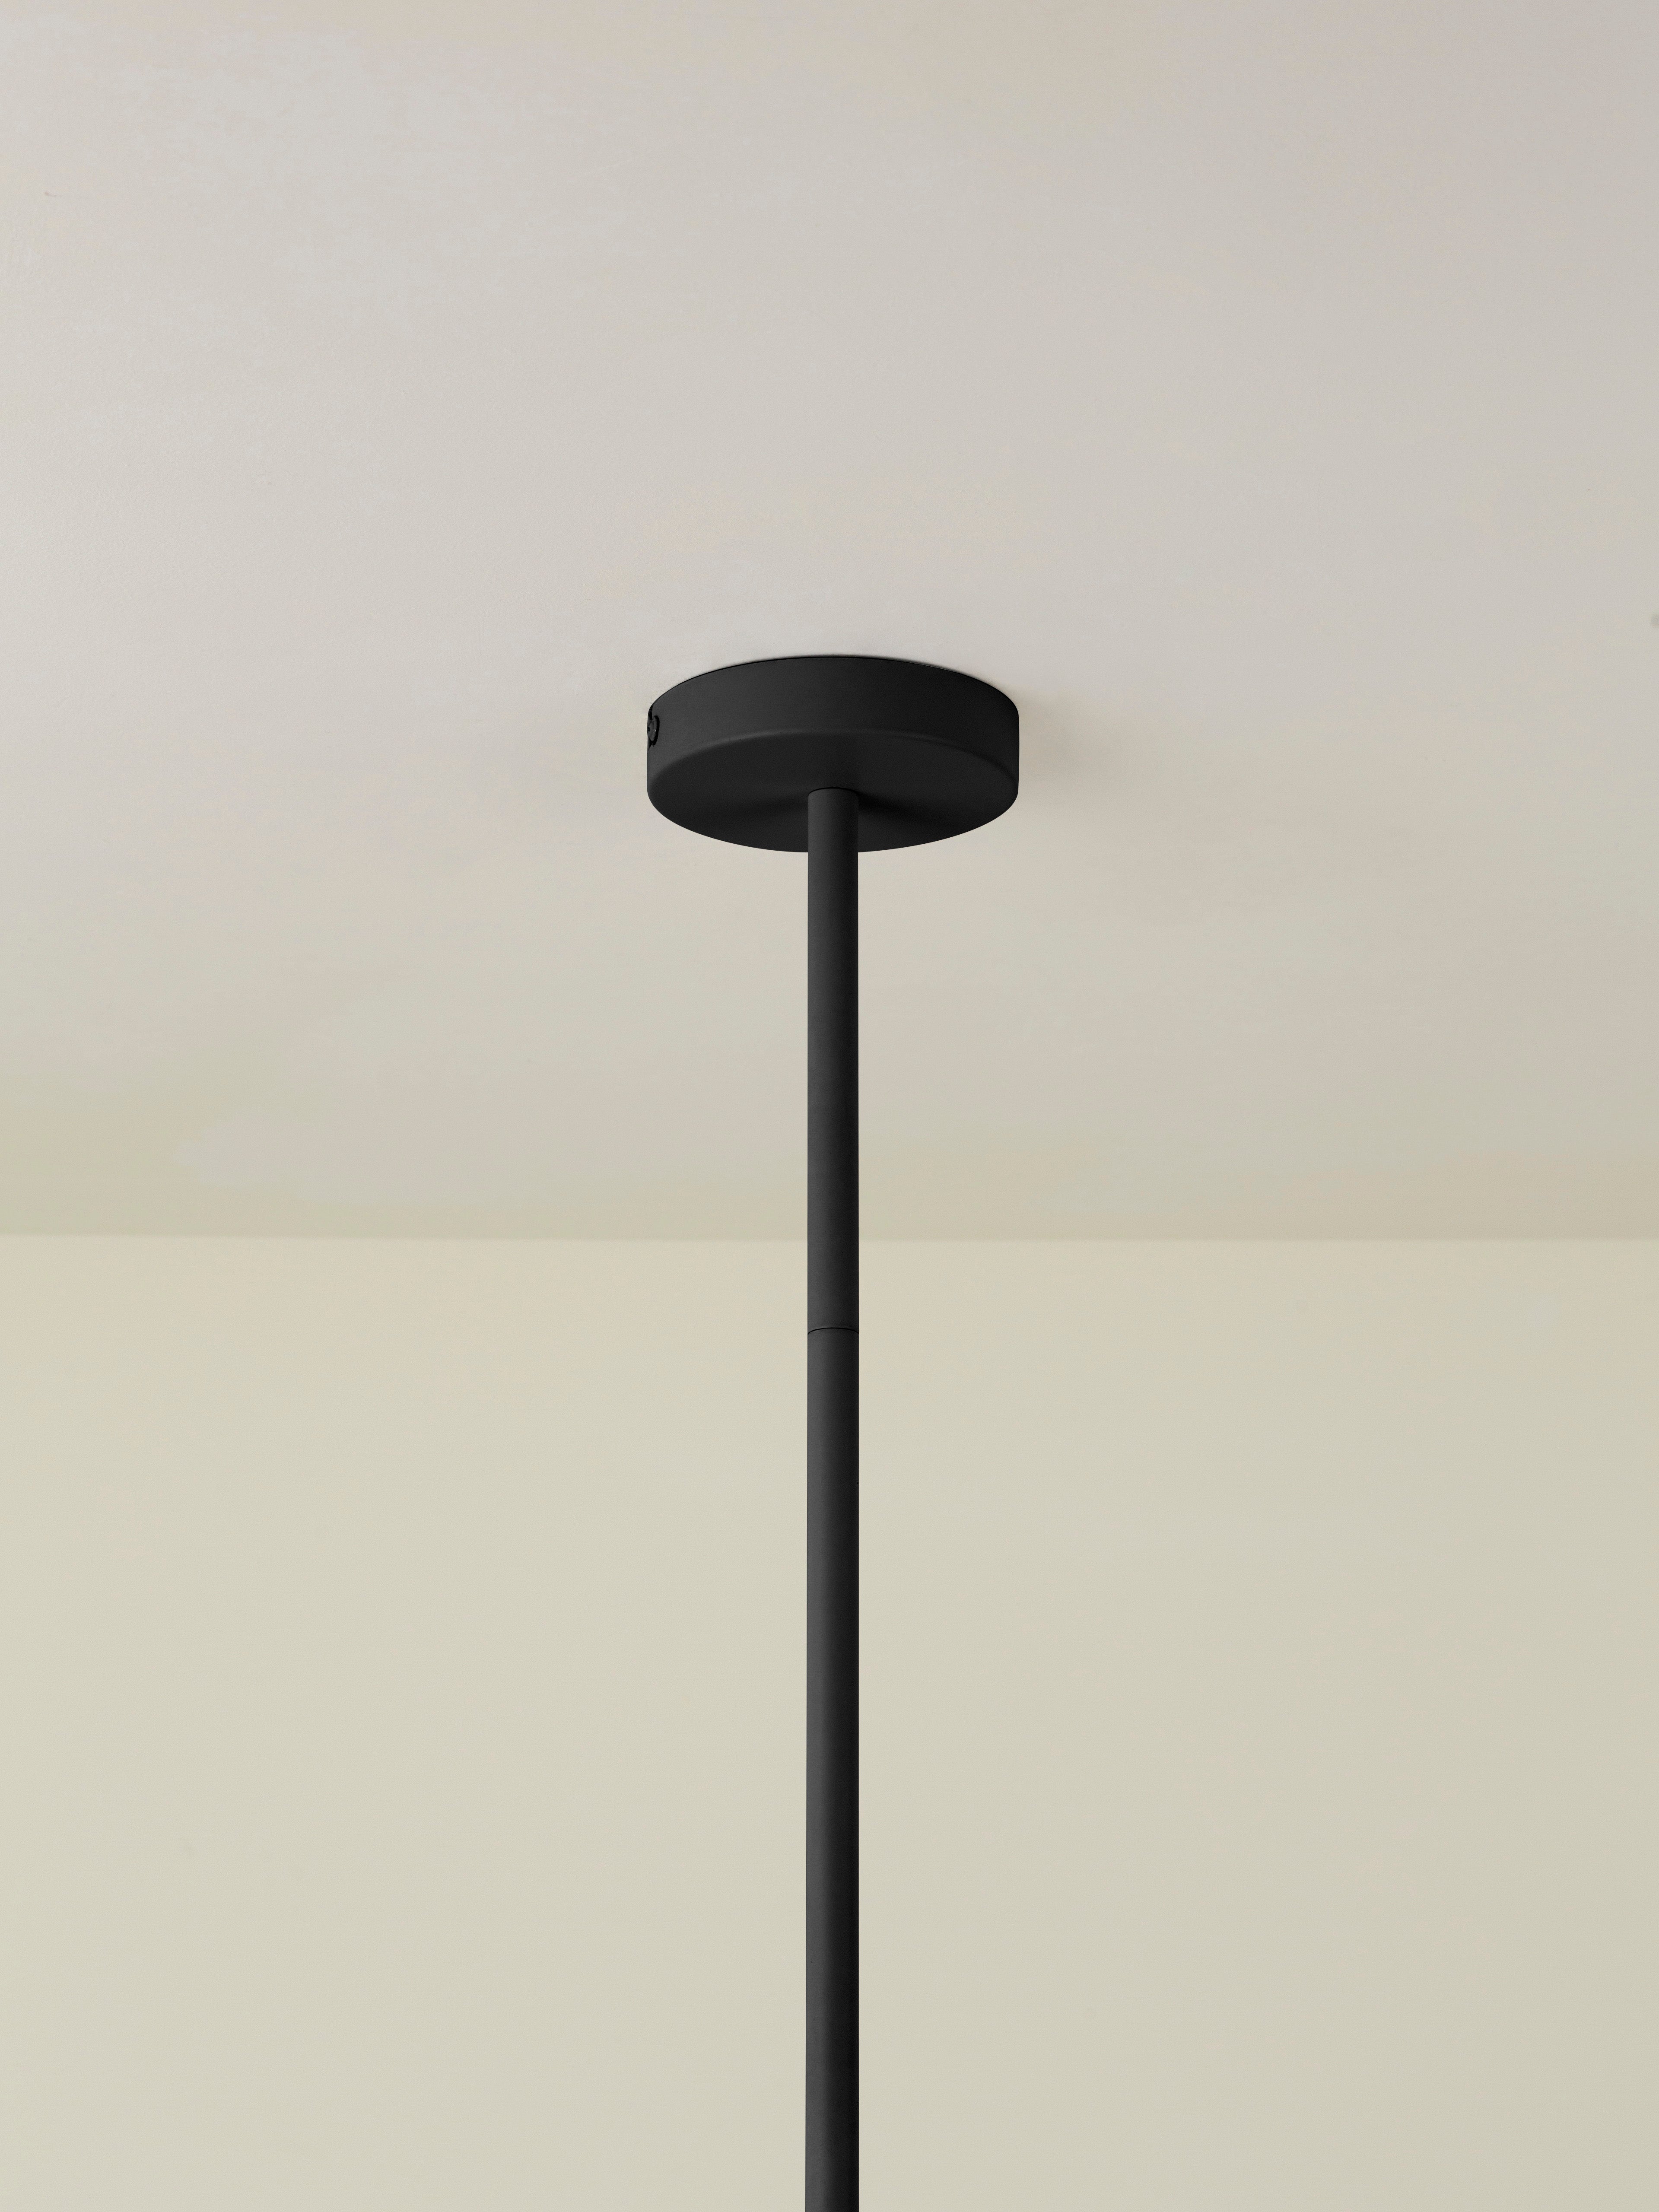 Ruzo - 4 light matt black and white porcelain ceiling pendant | Chandelier | Lights & Lamps | UK